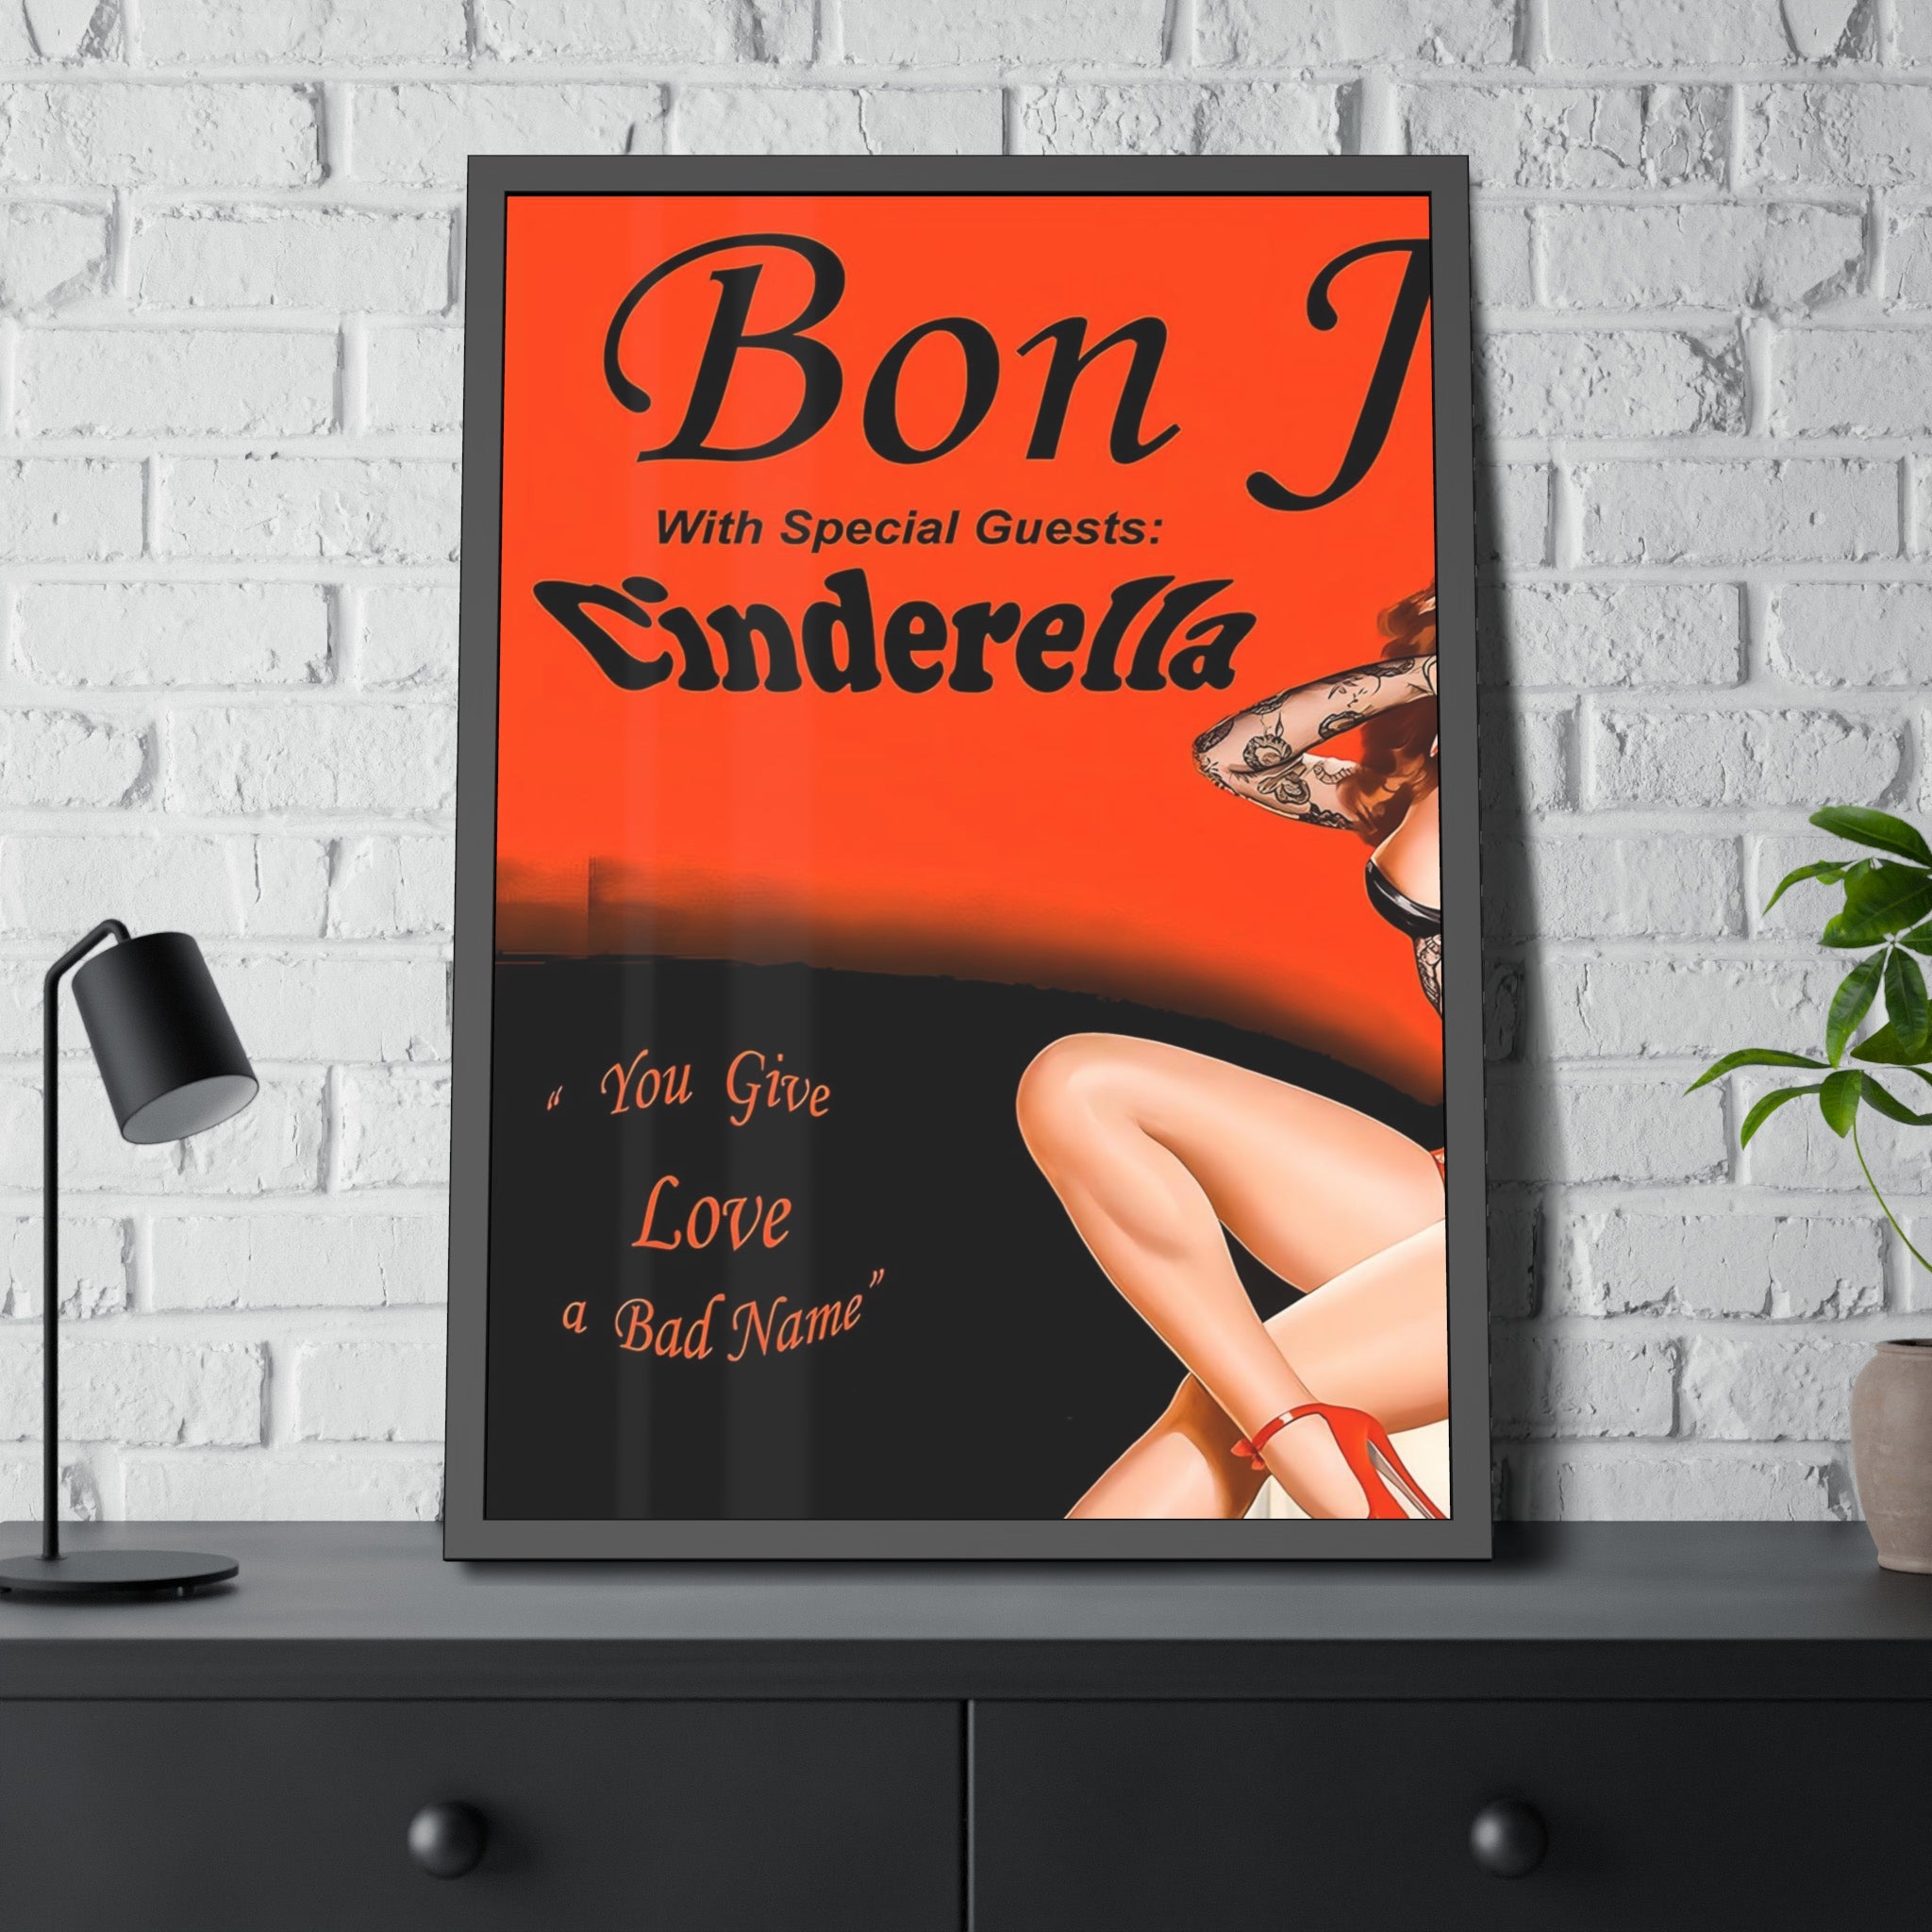 Bon Jovi Cinderella Concert Poster